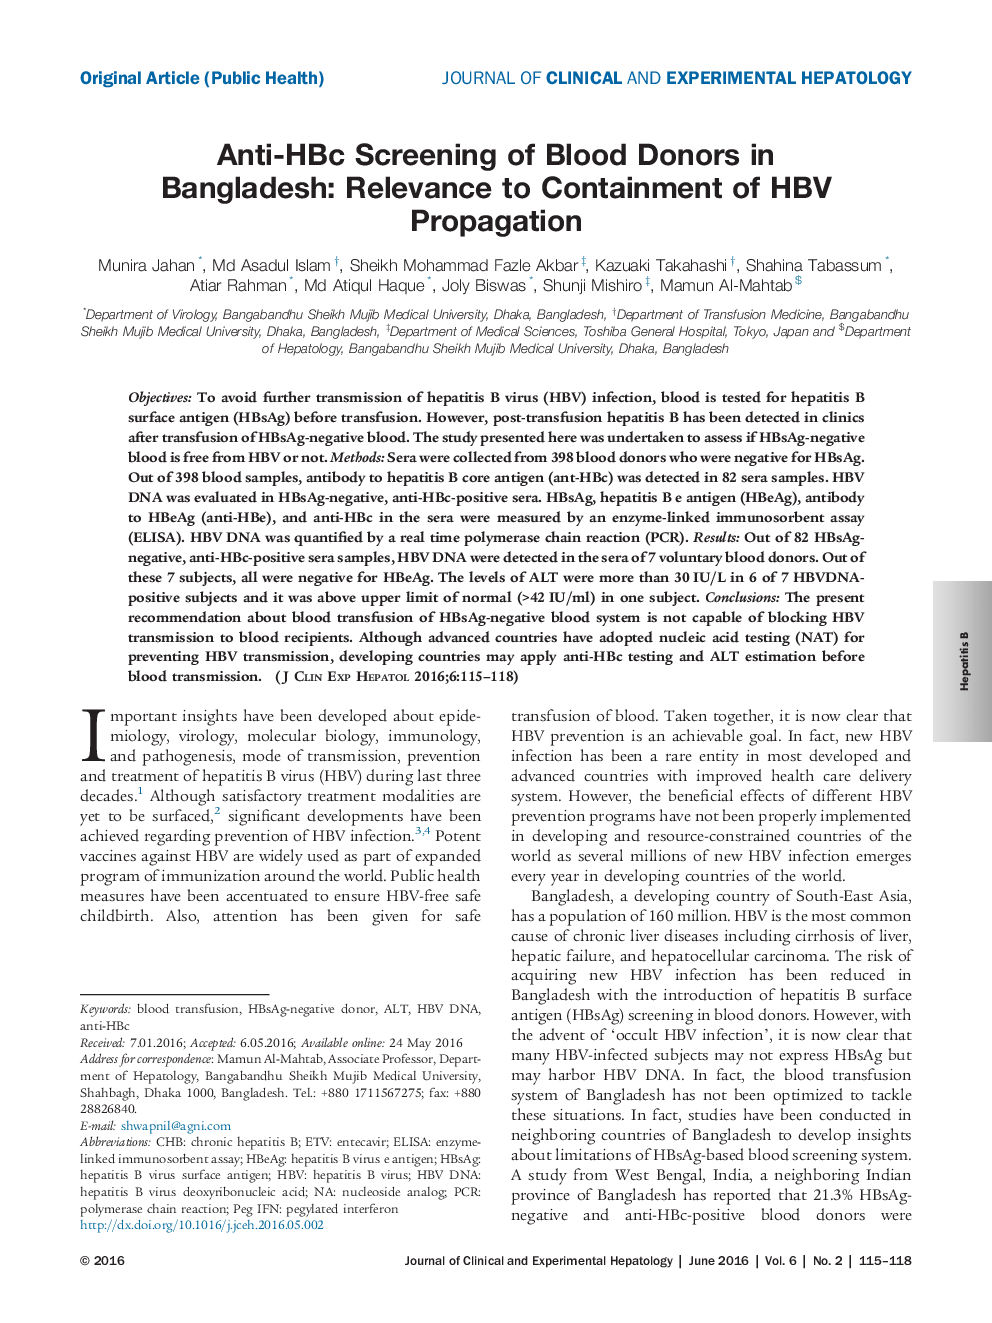 غربالگری anti-HBc از اهداکنندگان خون در بنگلادش: ارتباط با مهار انتشار HBV